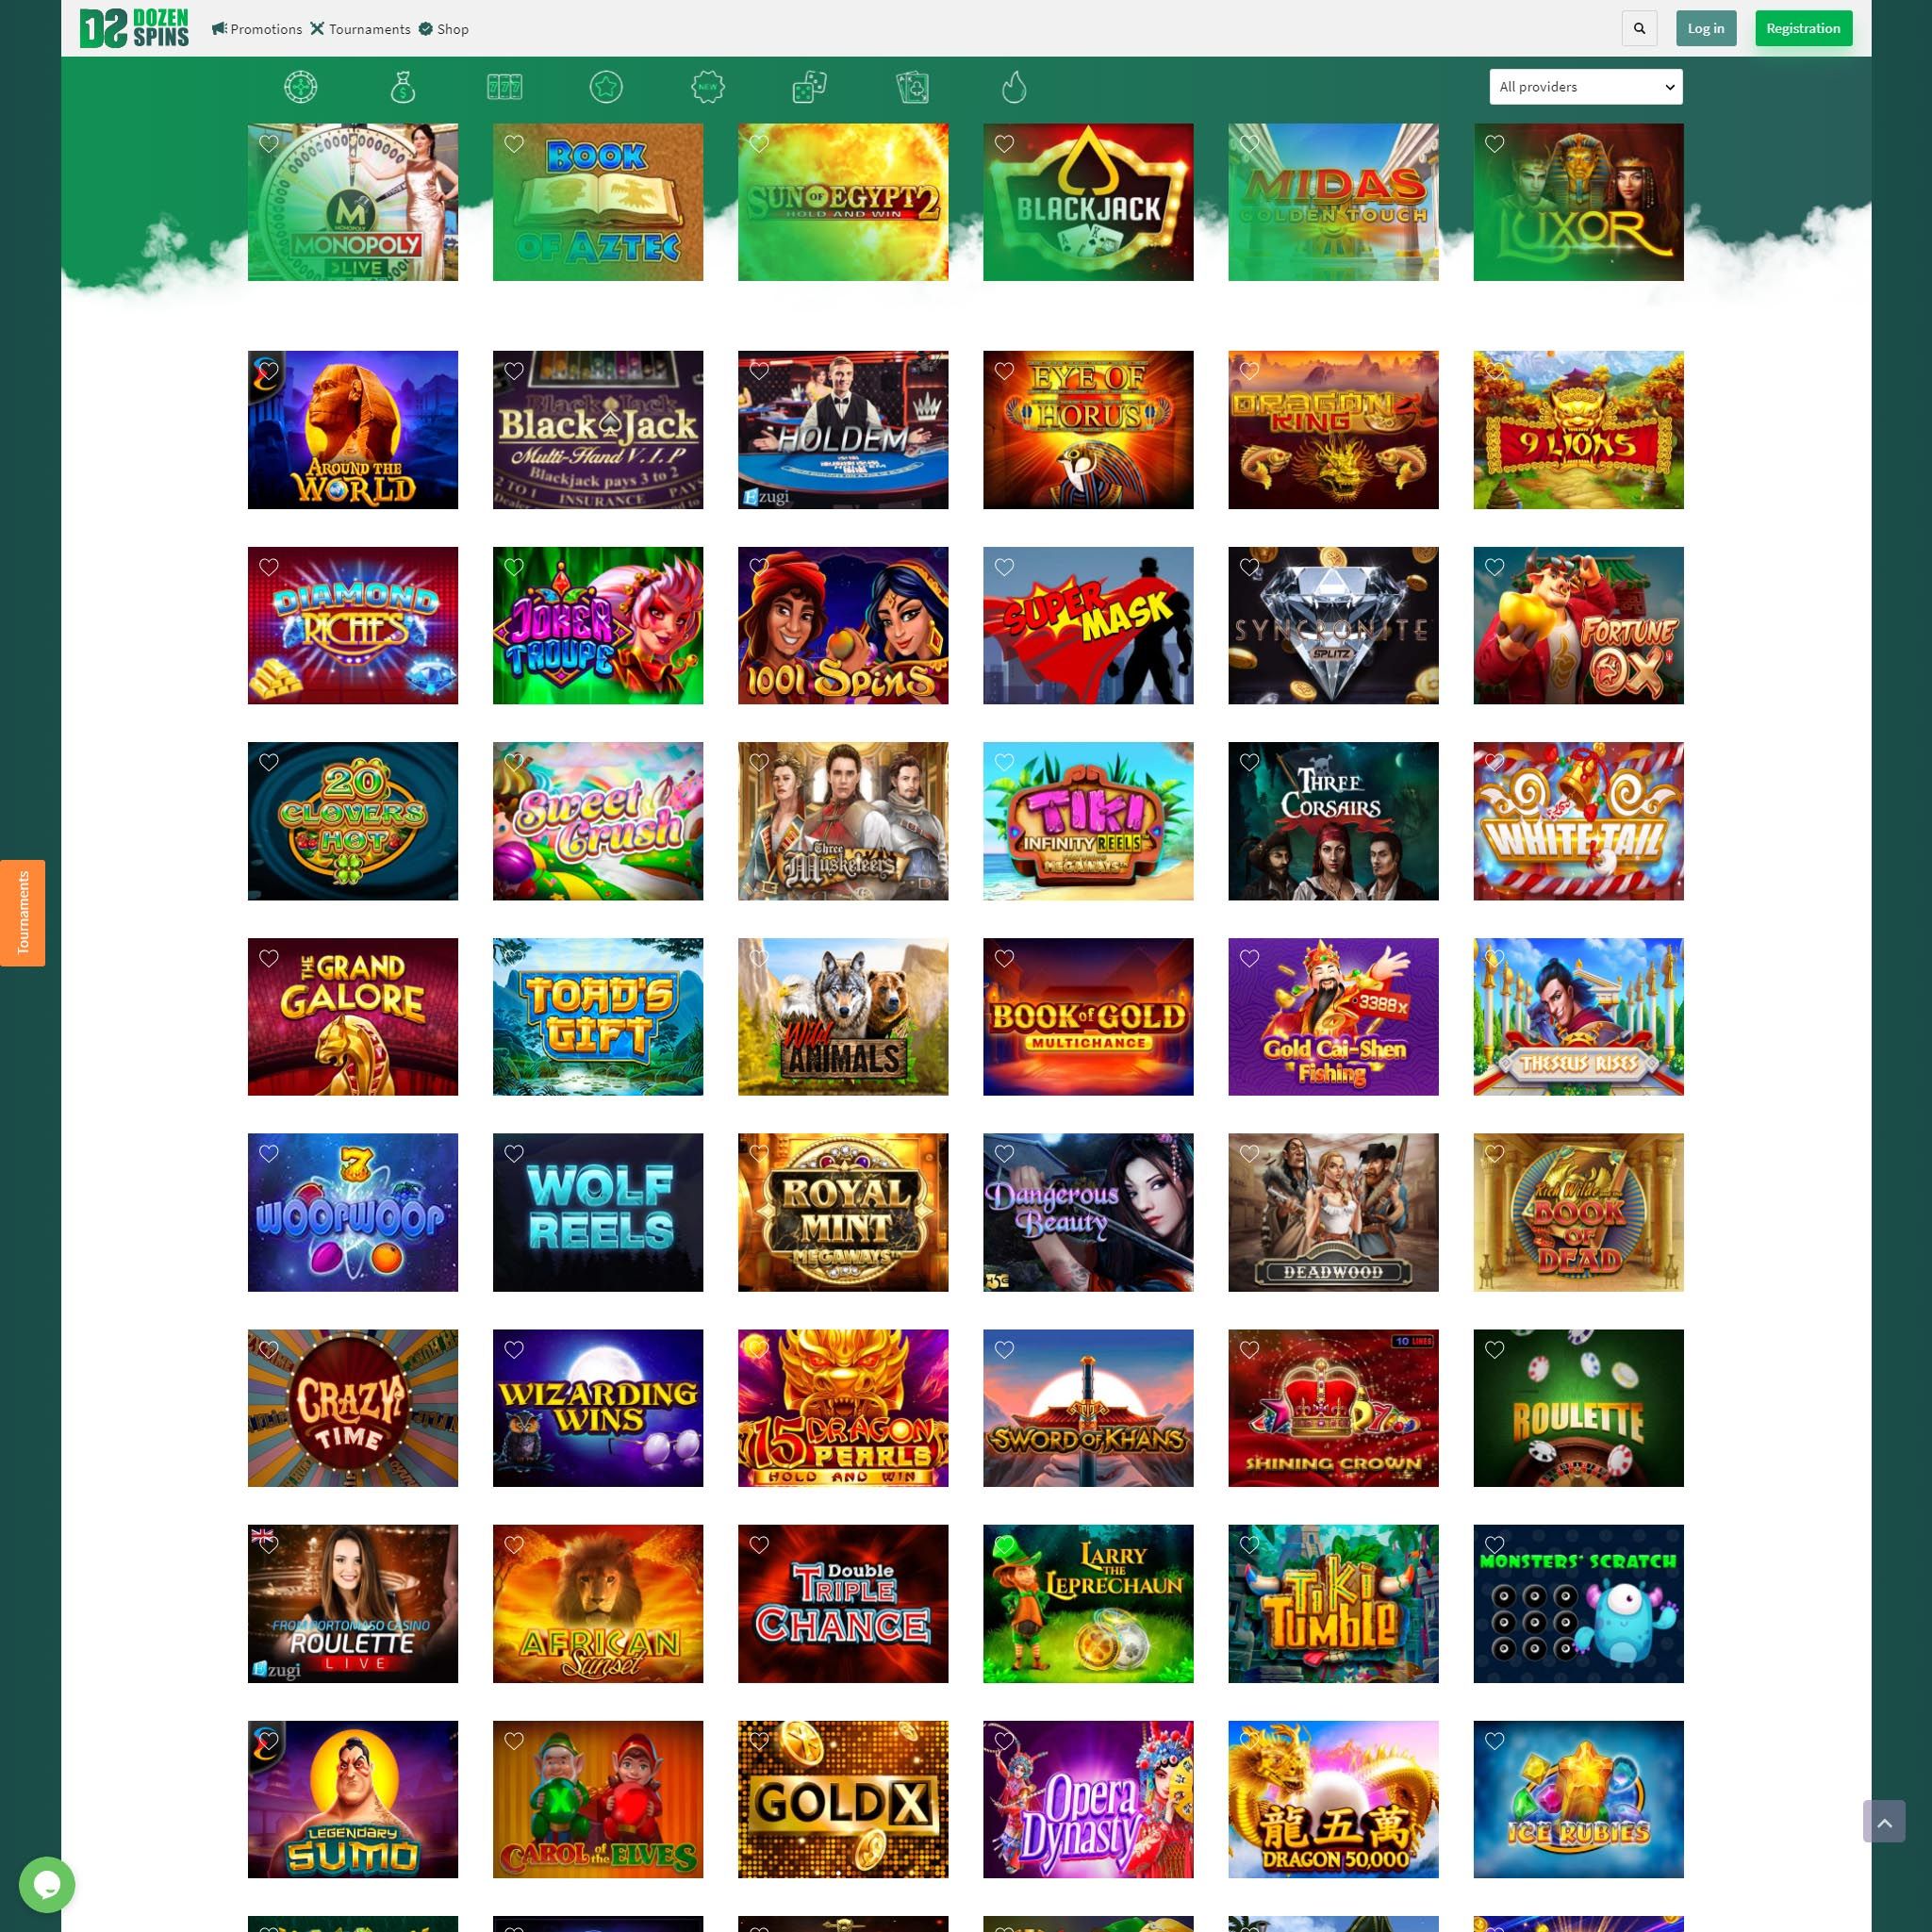 Find DozenSpins game catalog